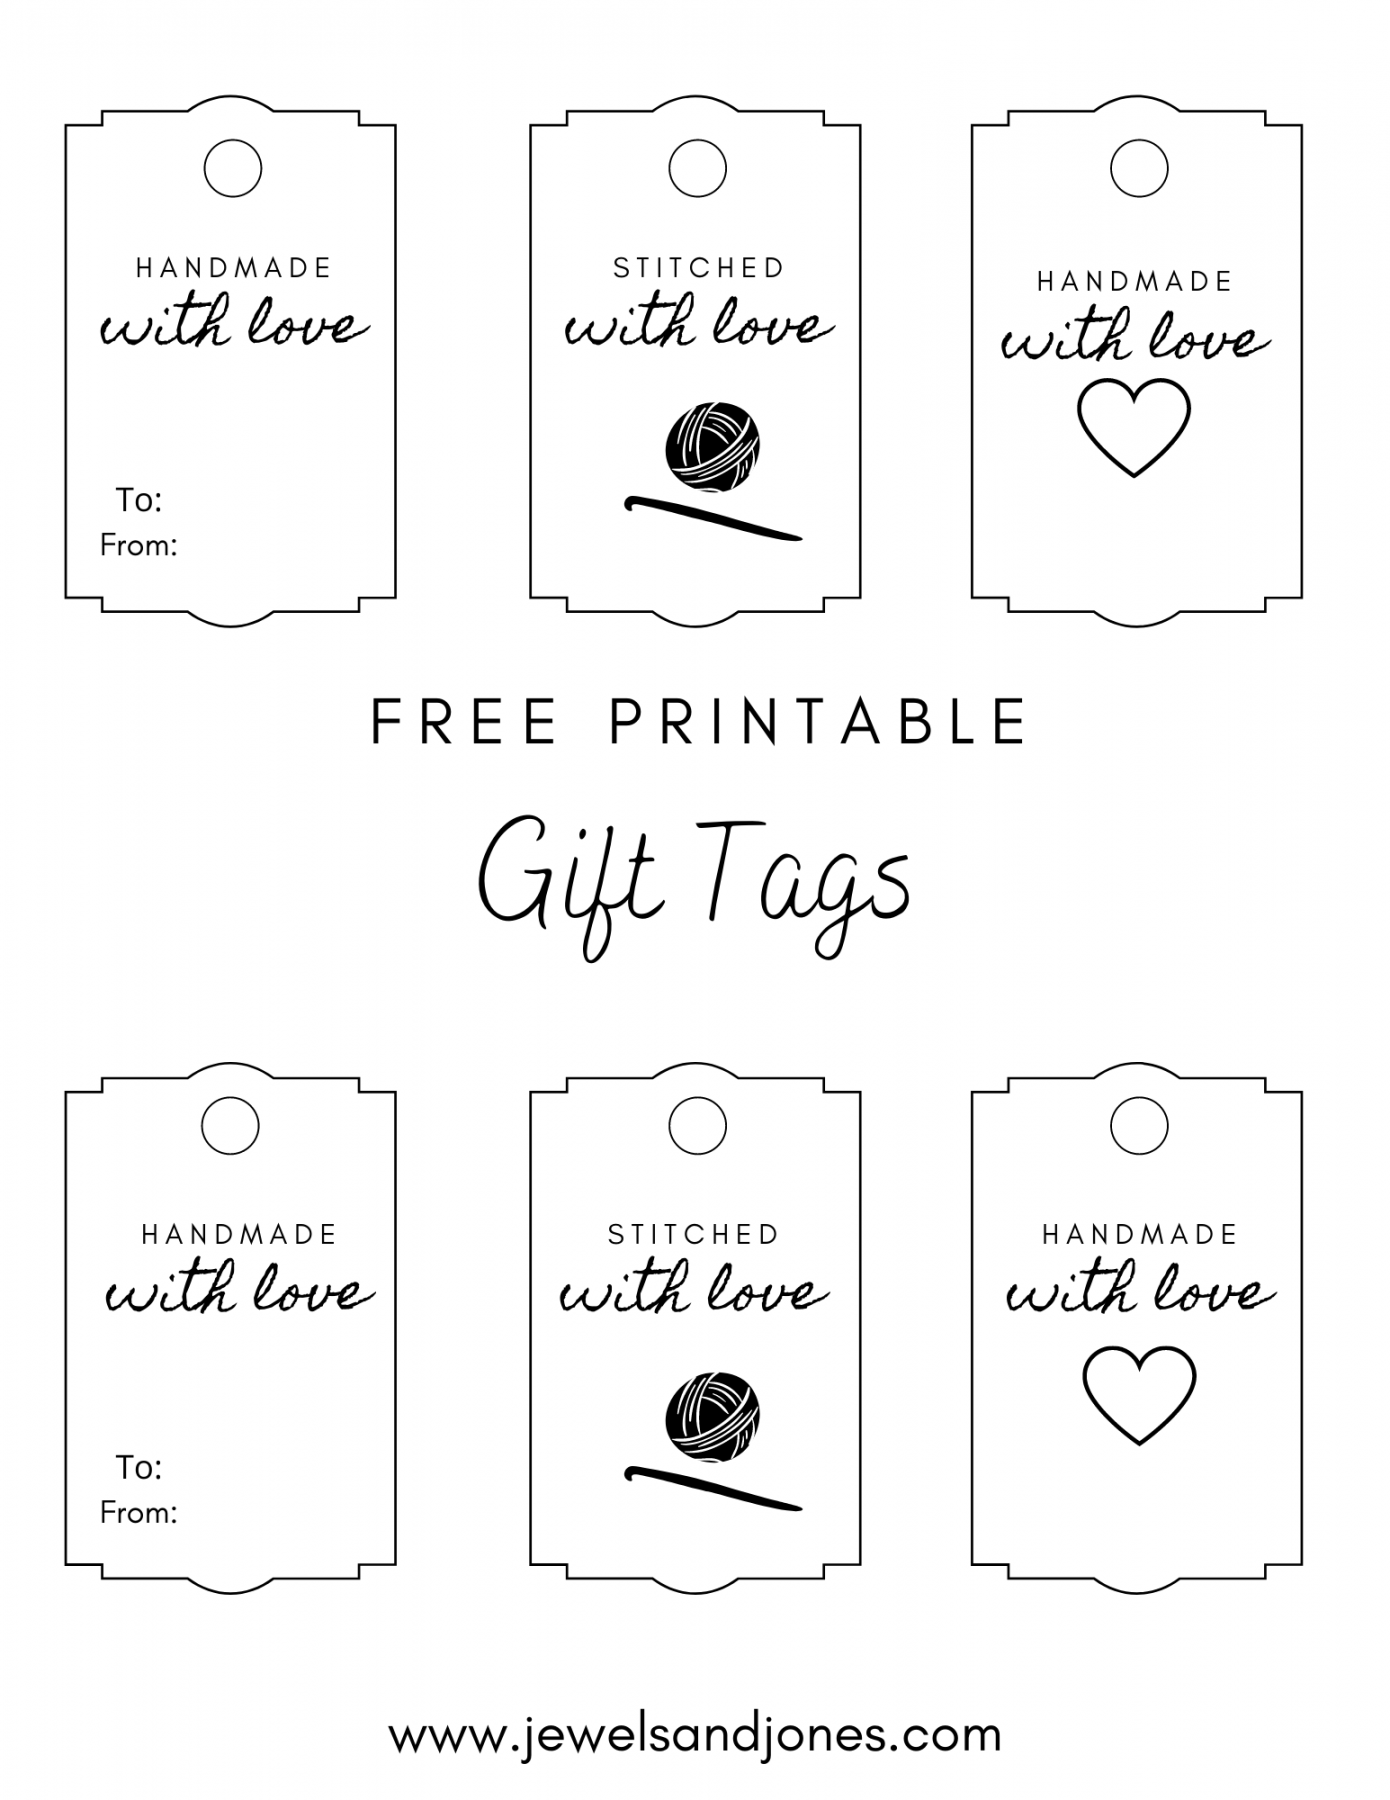 Free Gift Tags Printable - Printable - Crochet Gift Tags - Free Printable - Jewels and Jones